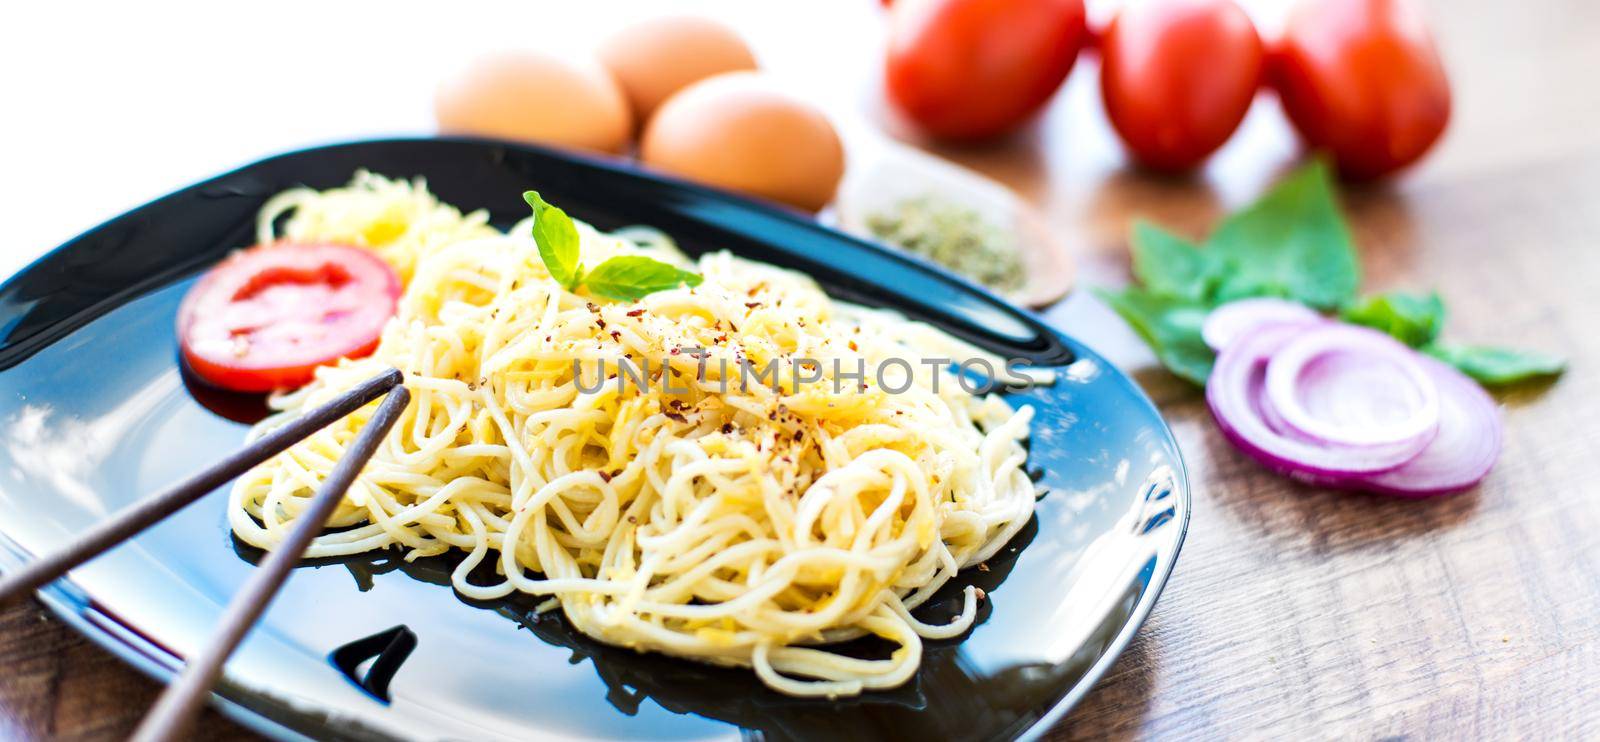 Tasty spaghetti dinner with sauce and basil